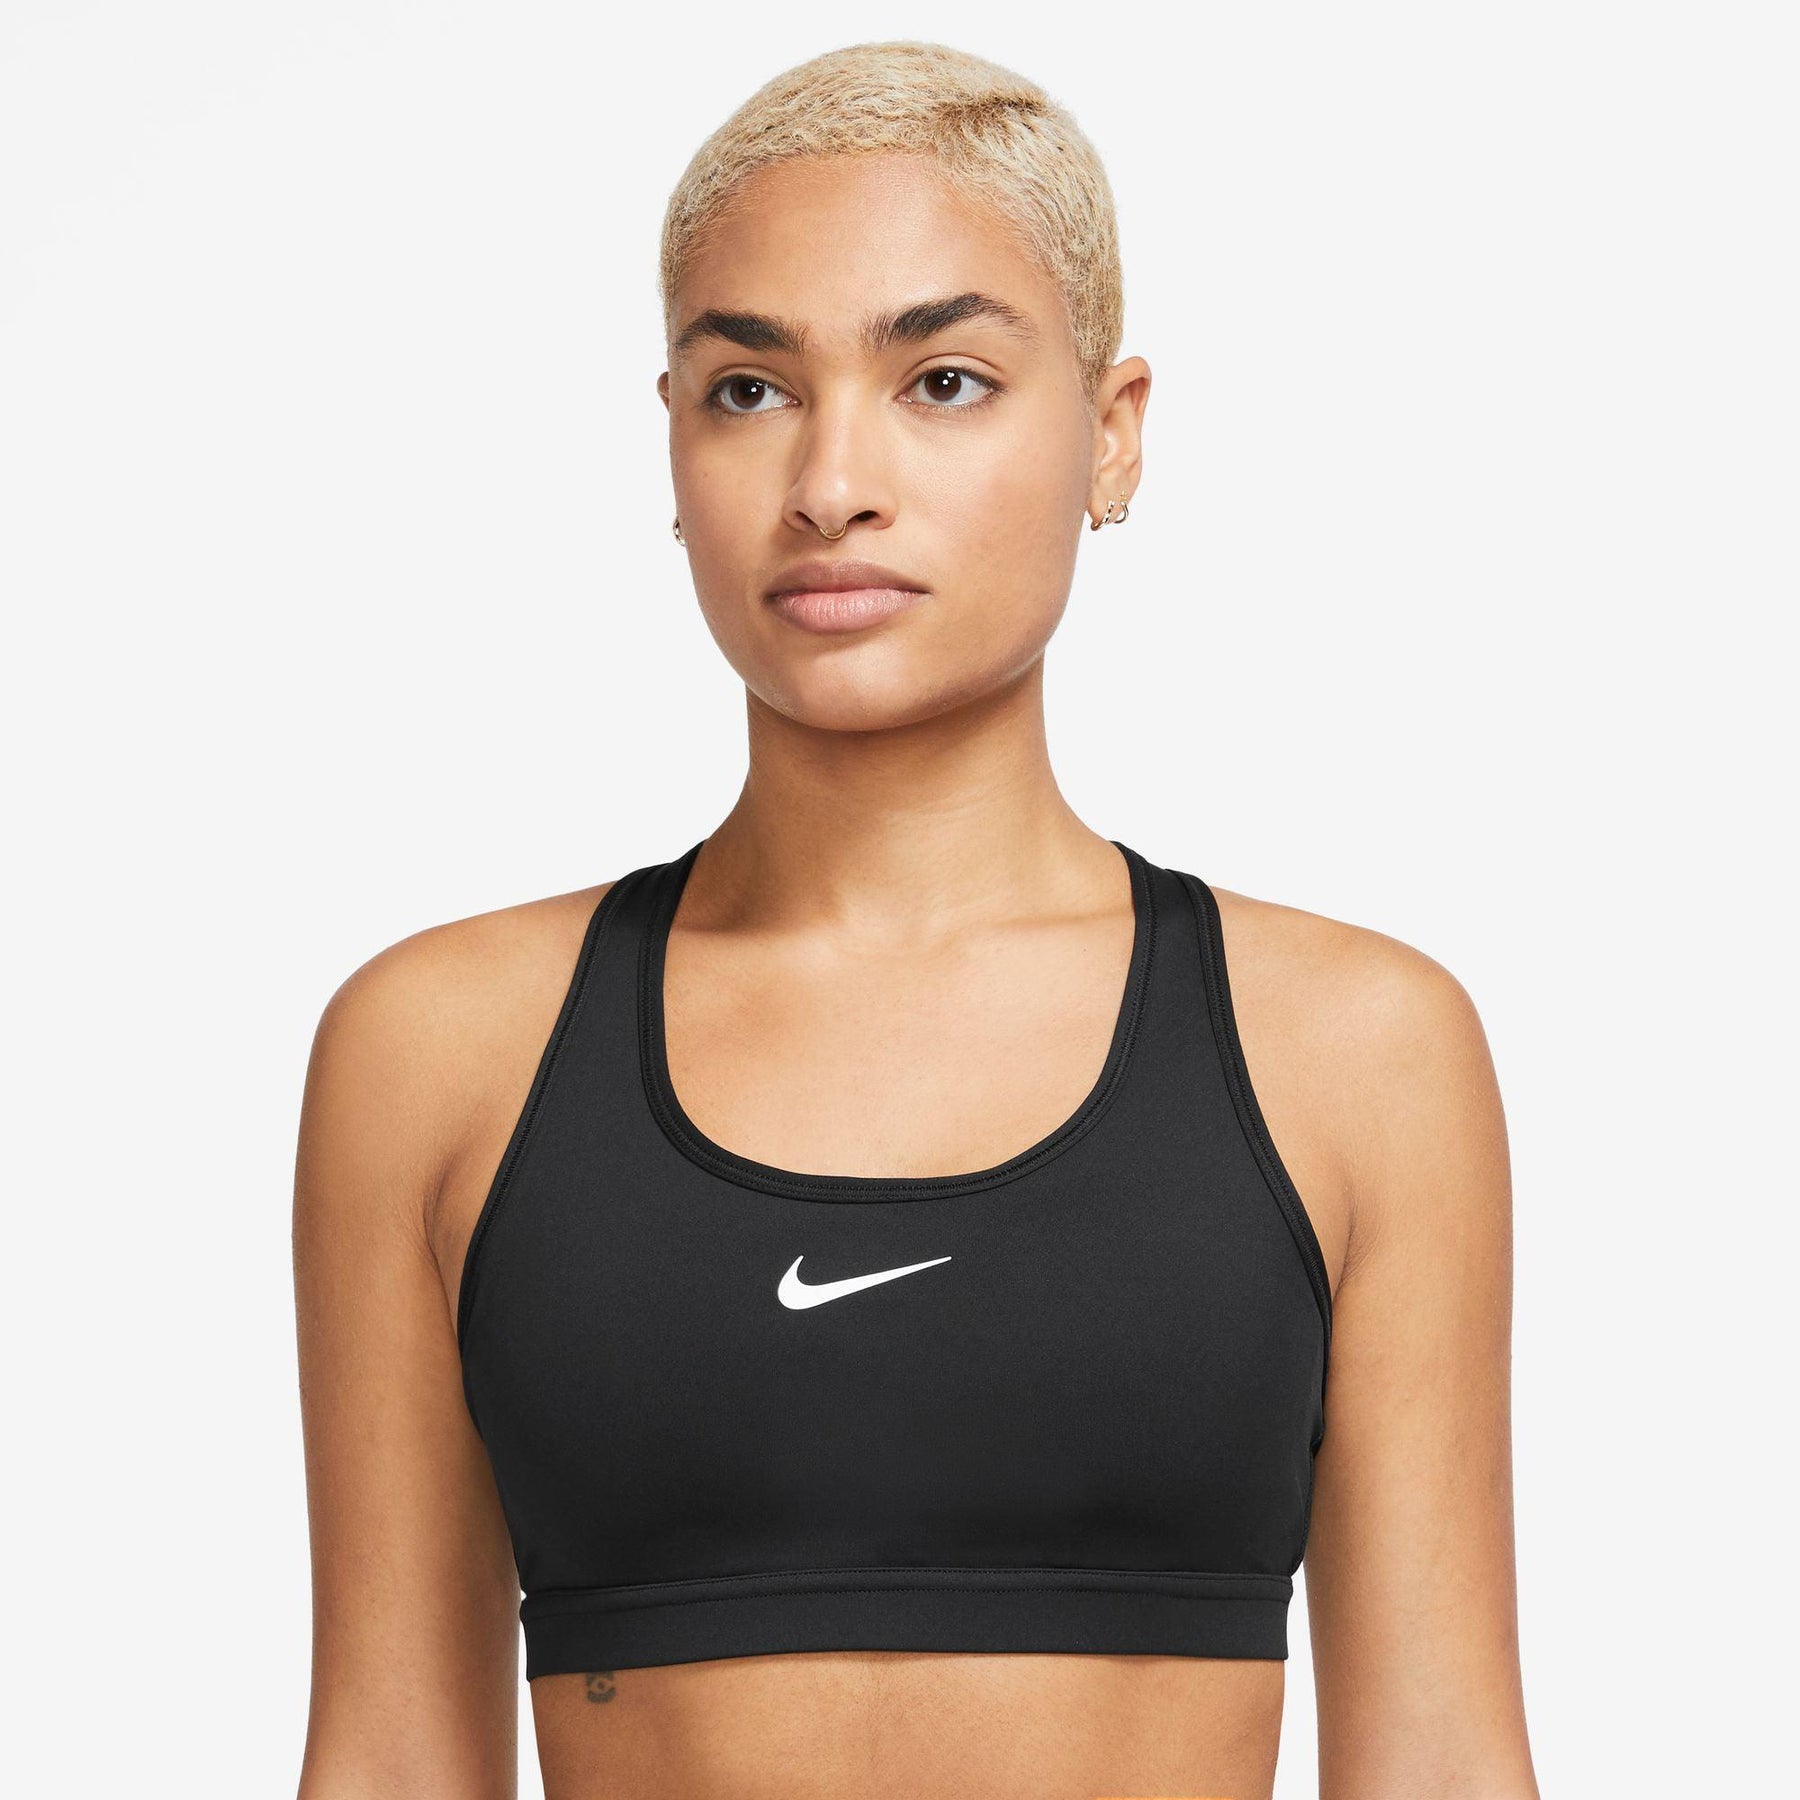 Nike-Women's Nike Swoosh Medium Support-Black/White-Pacers Running